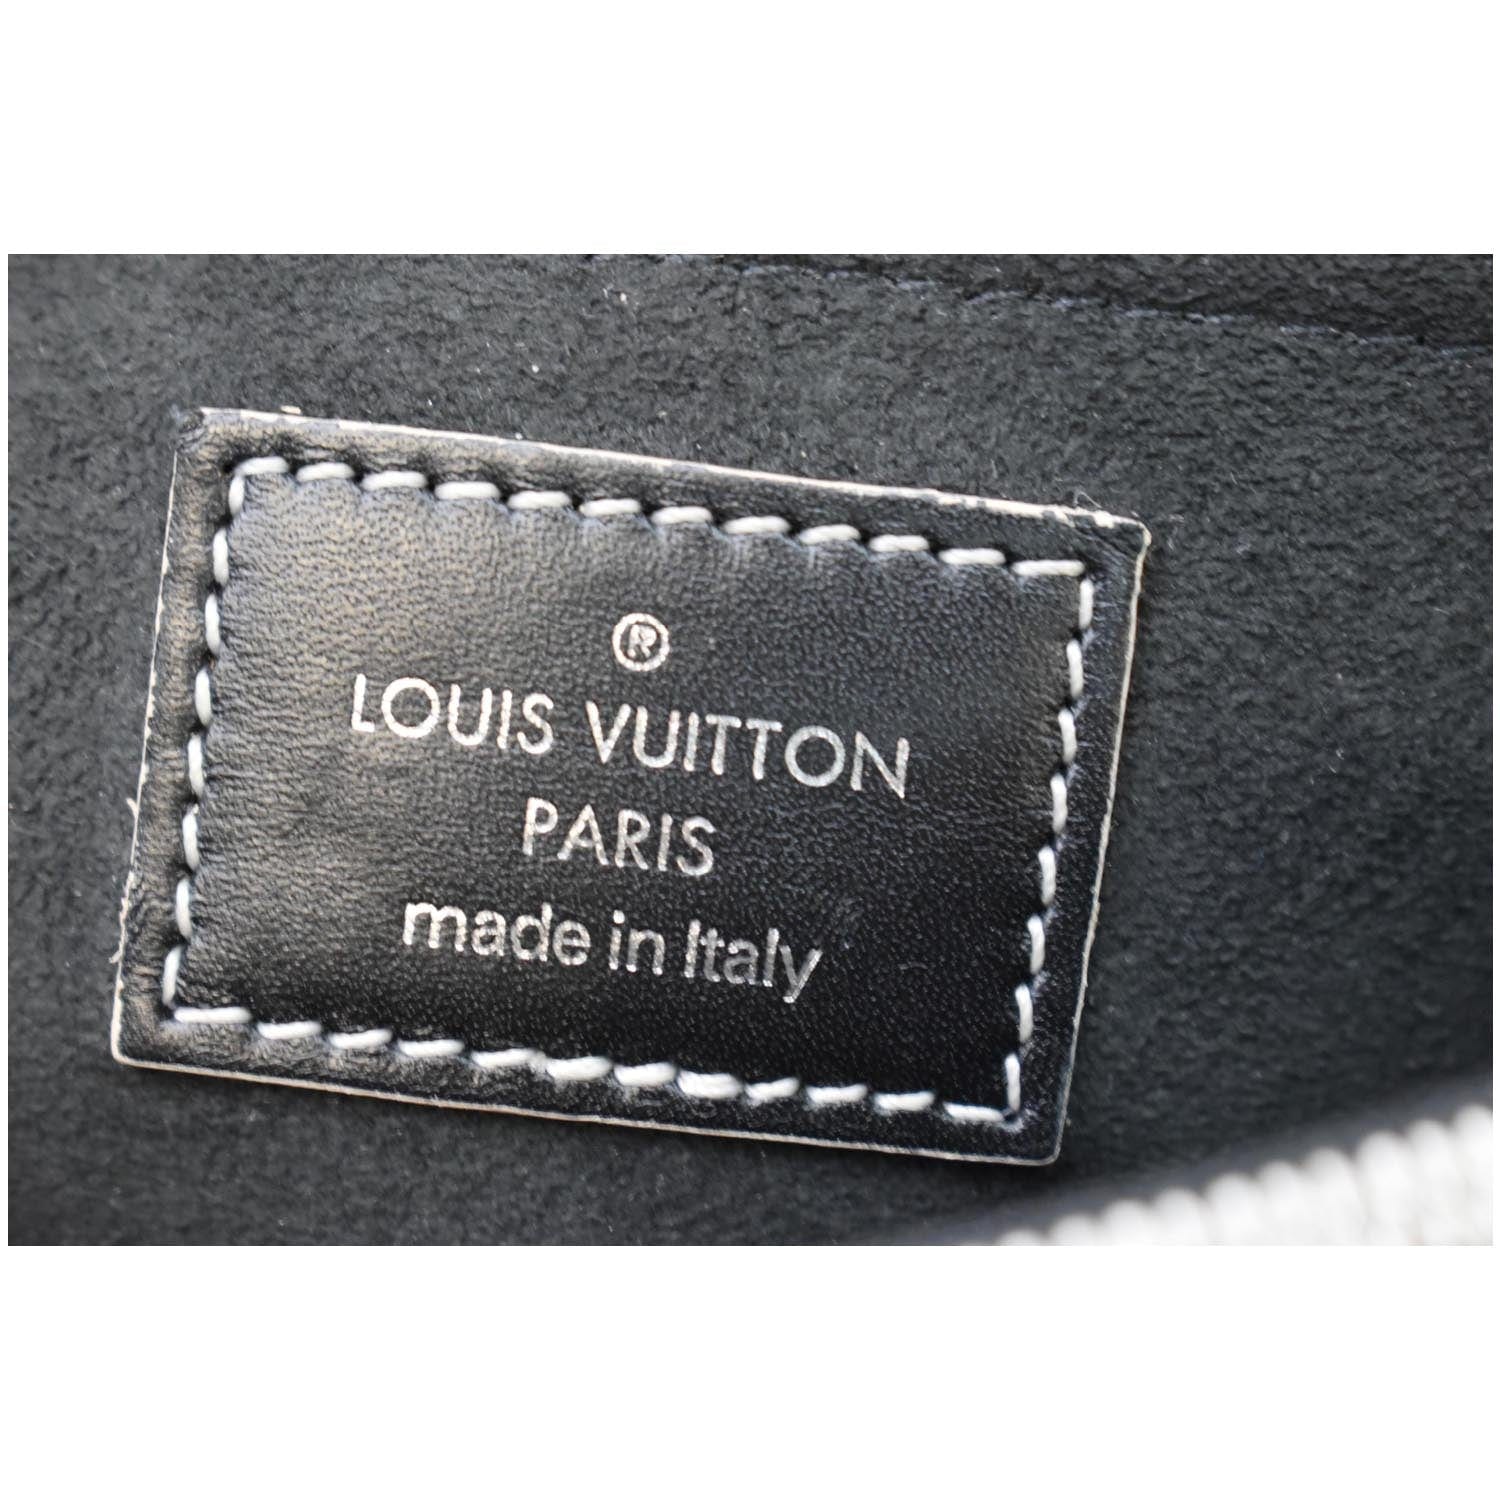 5 cách phân biệt túi xách Louis Vuitton chính hãng thật - giả